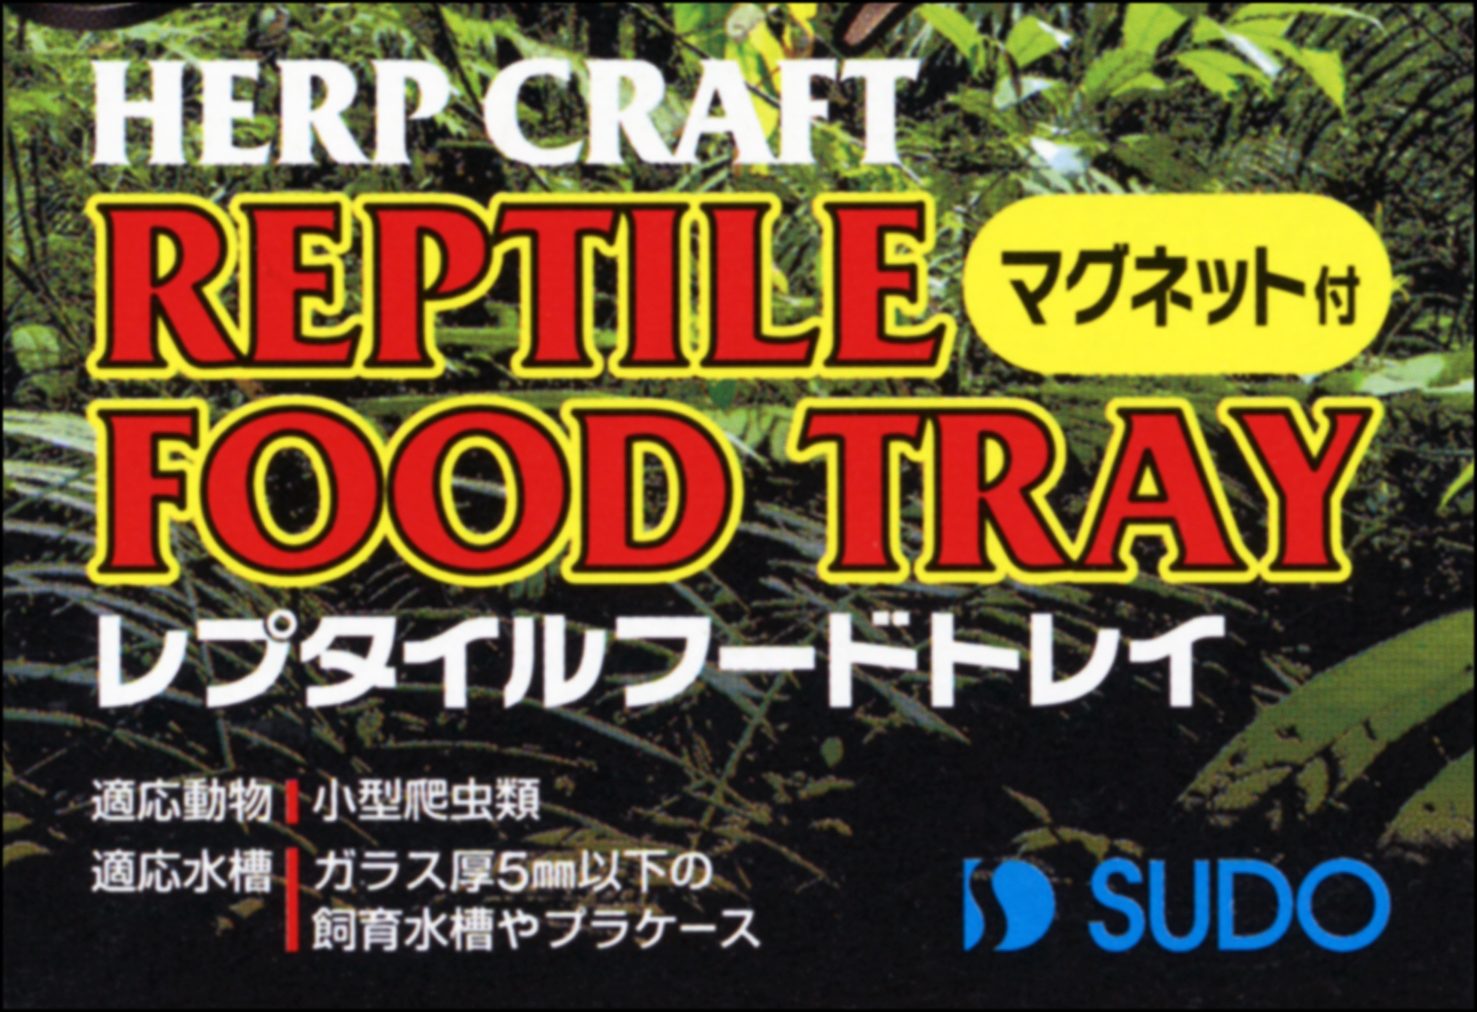 レプタイルフードトレイ スドー 爬虫類用餌入れ/水入れ 販売 通販